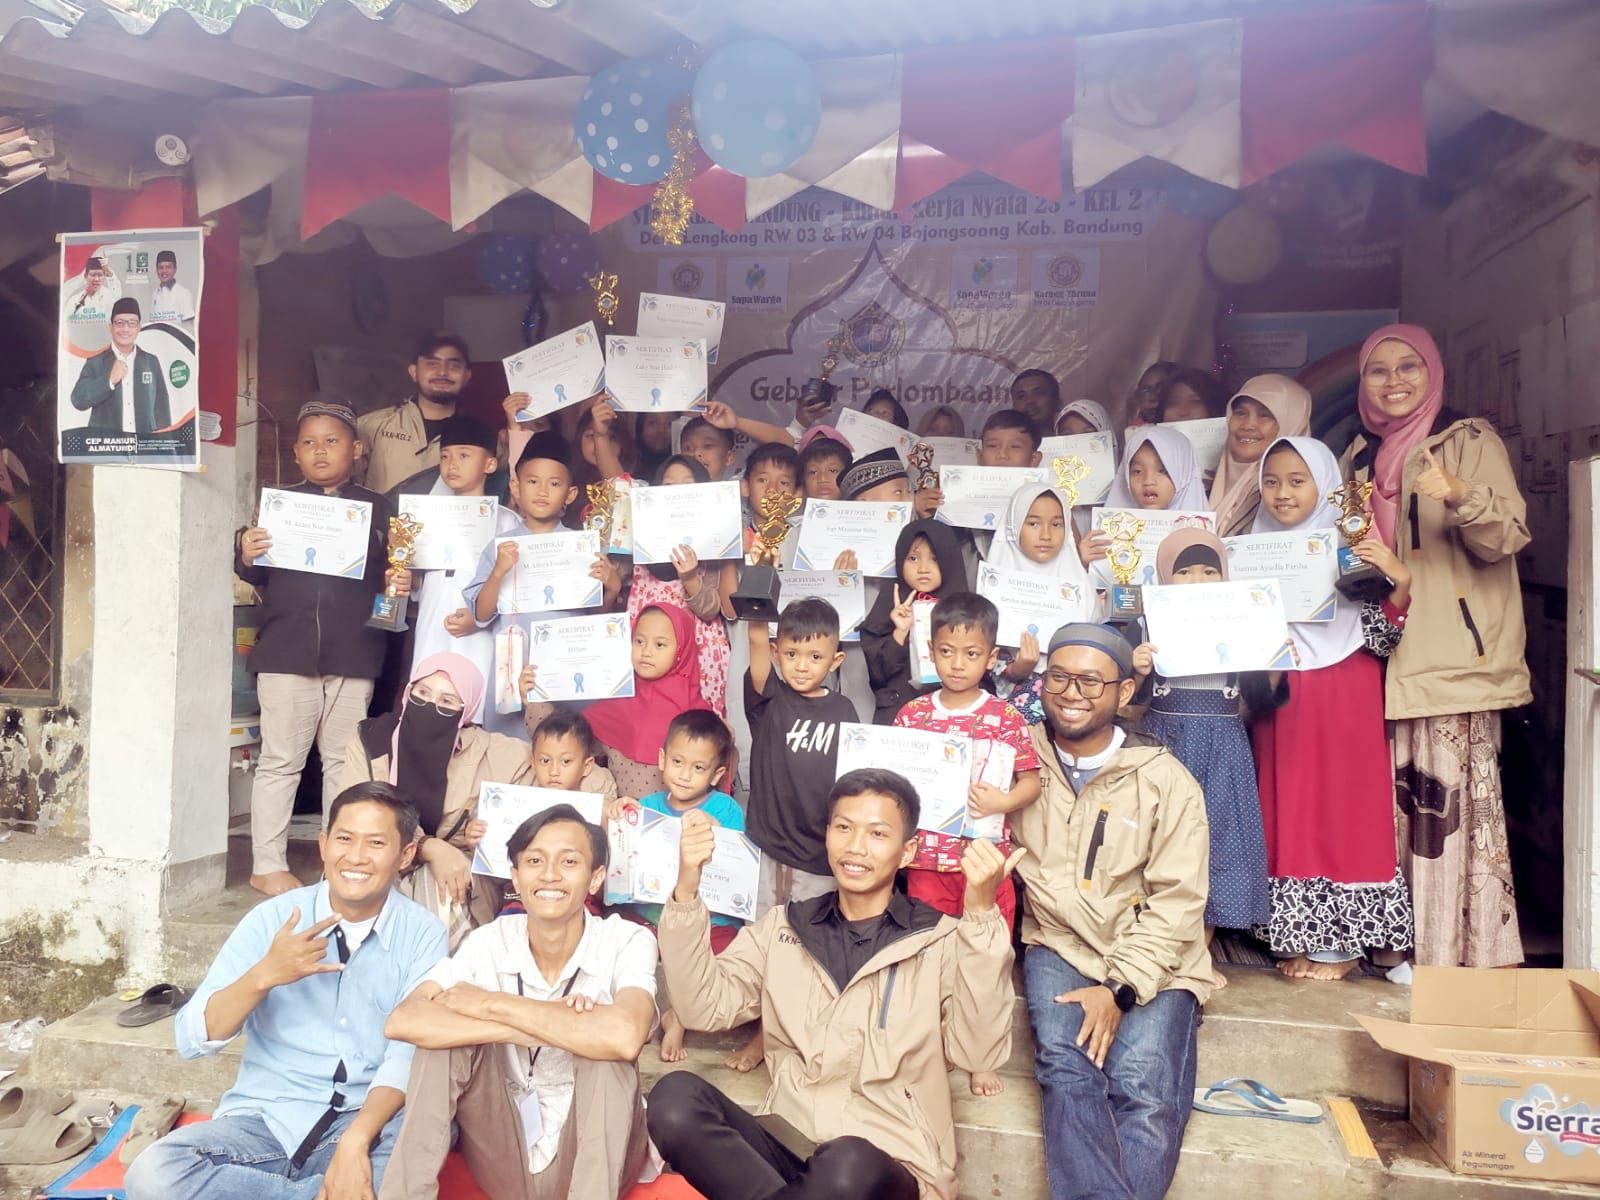 Para mahasiswa STAI berbaur dengan masyarakat saat menggelar KKN di Desa Lengkong, Kecamatan Bojongsoang, Kabupaten Bandung.